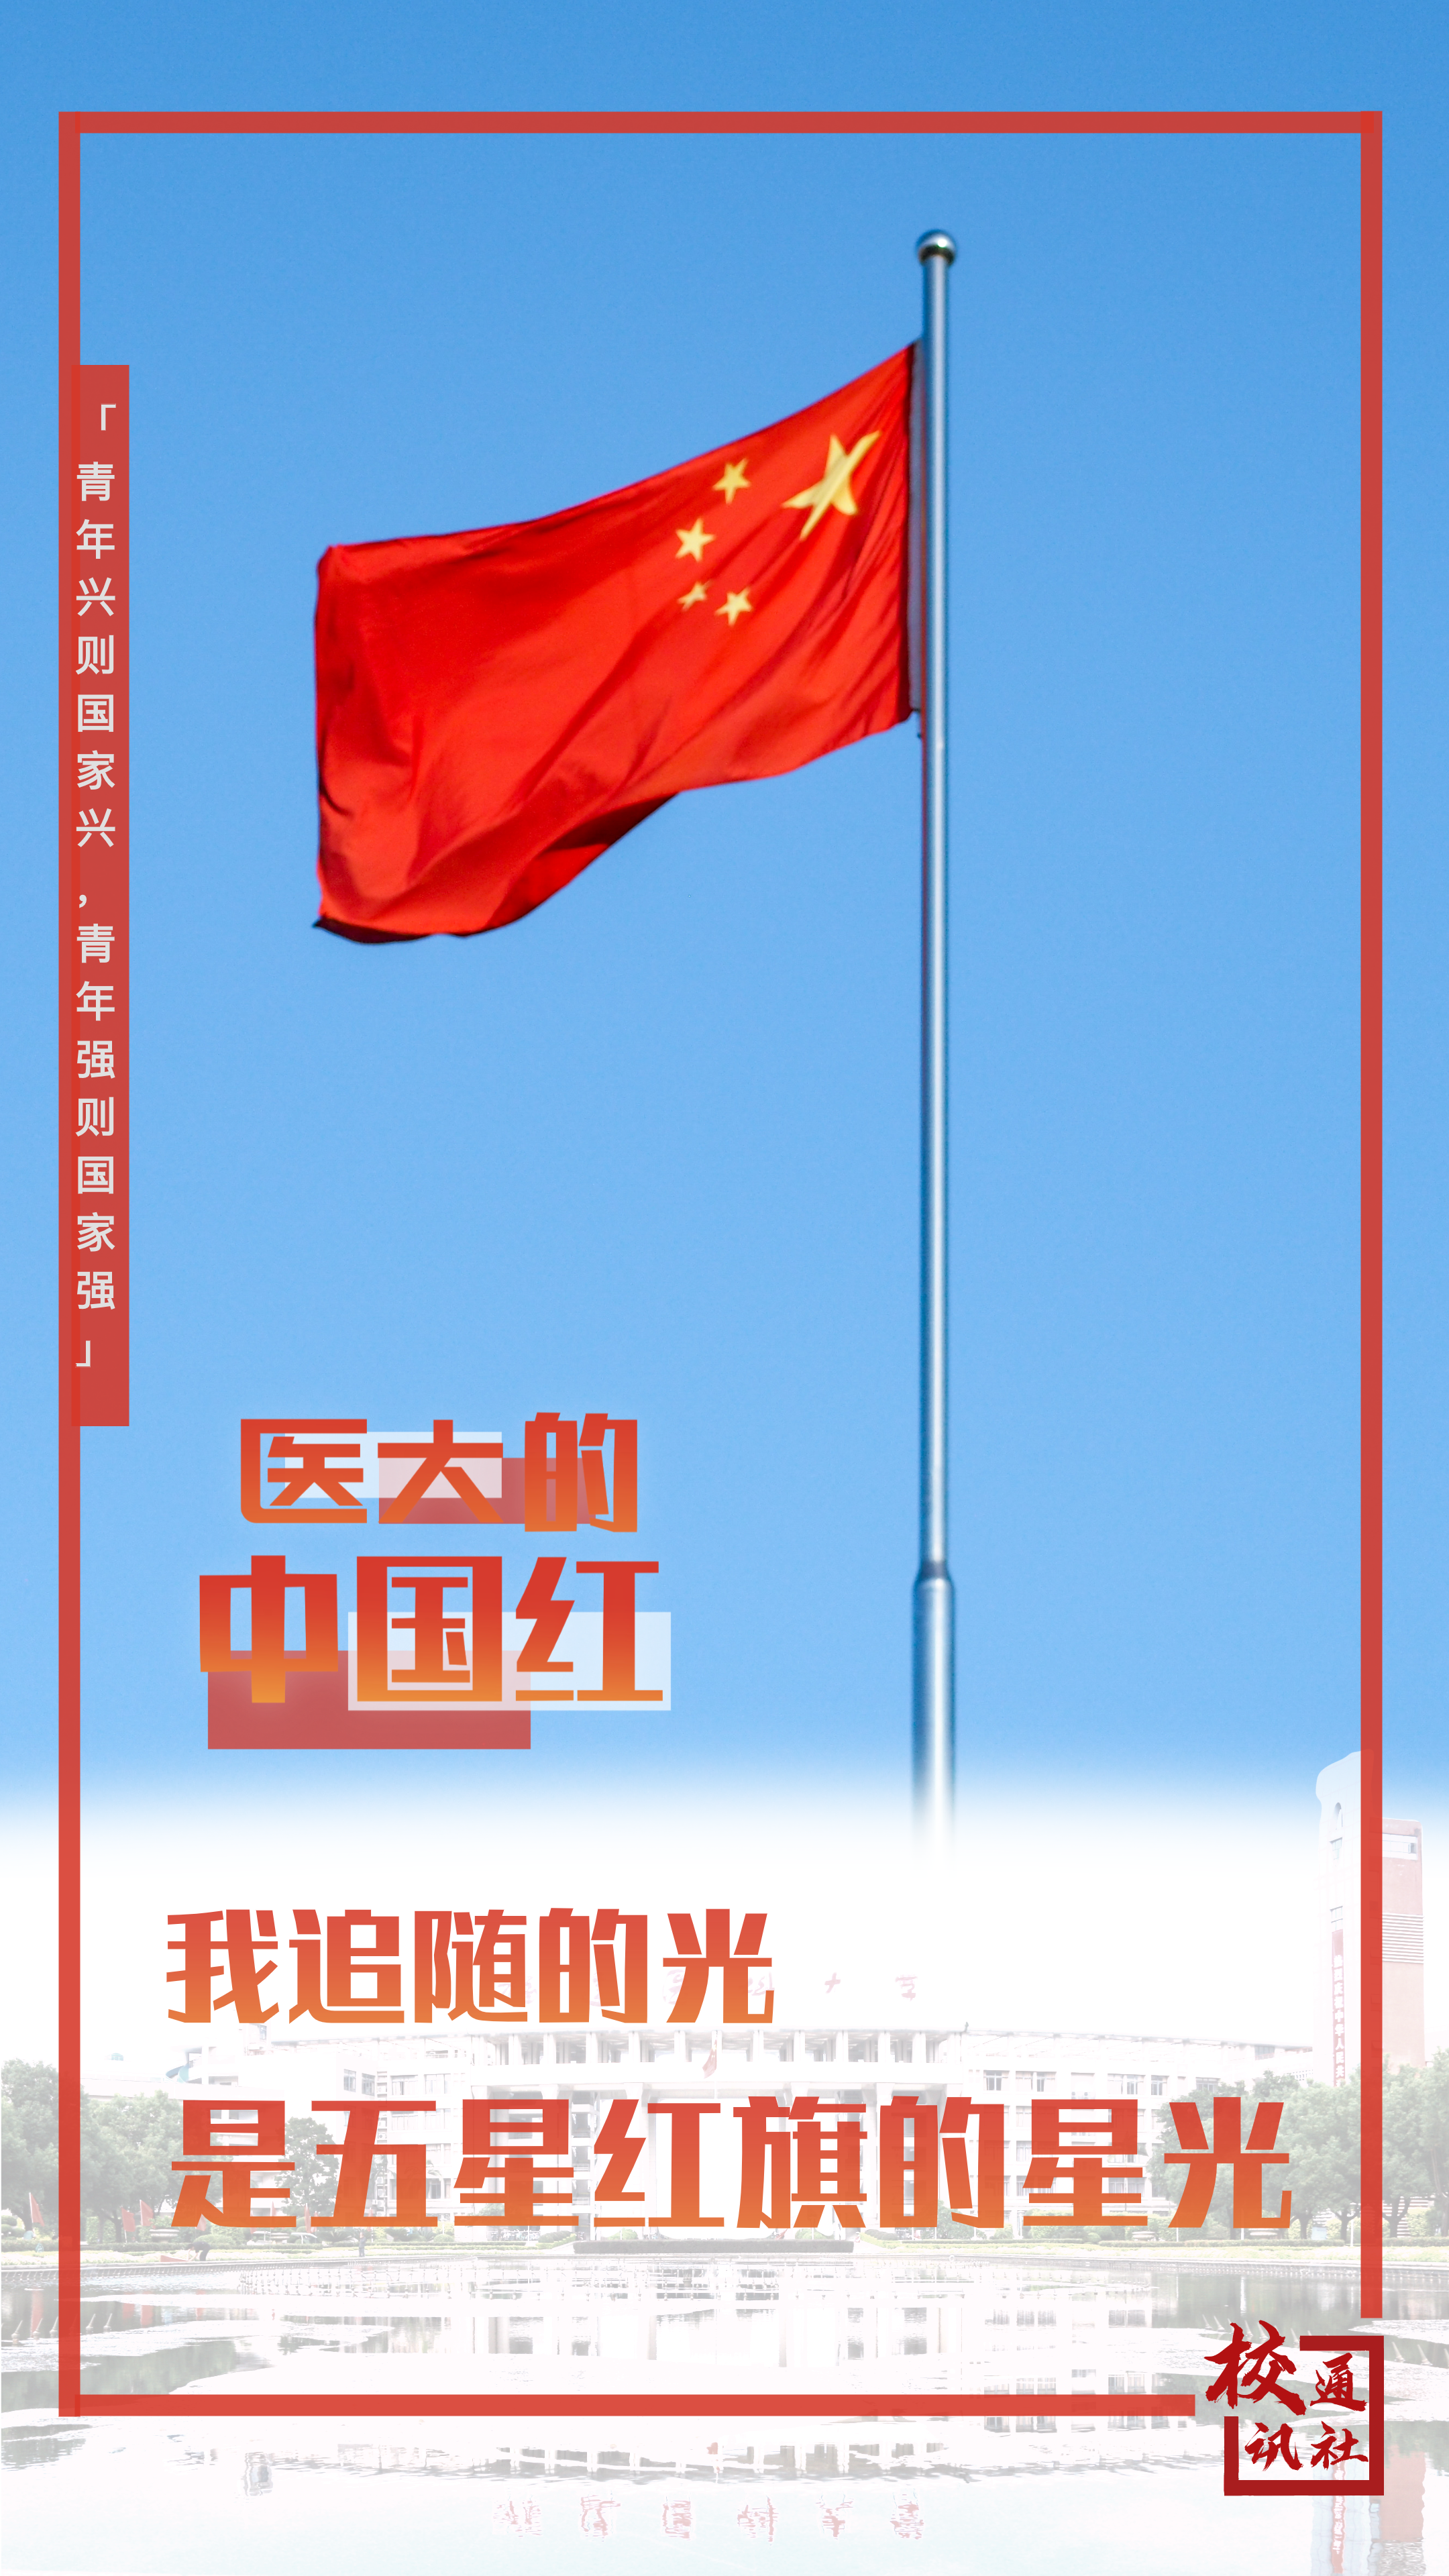 01飘扬的五星红旗,承载着福医学子和万千中国人对祖国母亲的爱。(李佩芝摄)